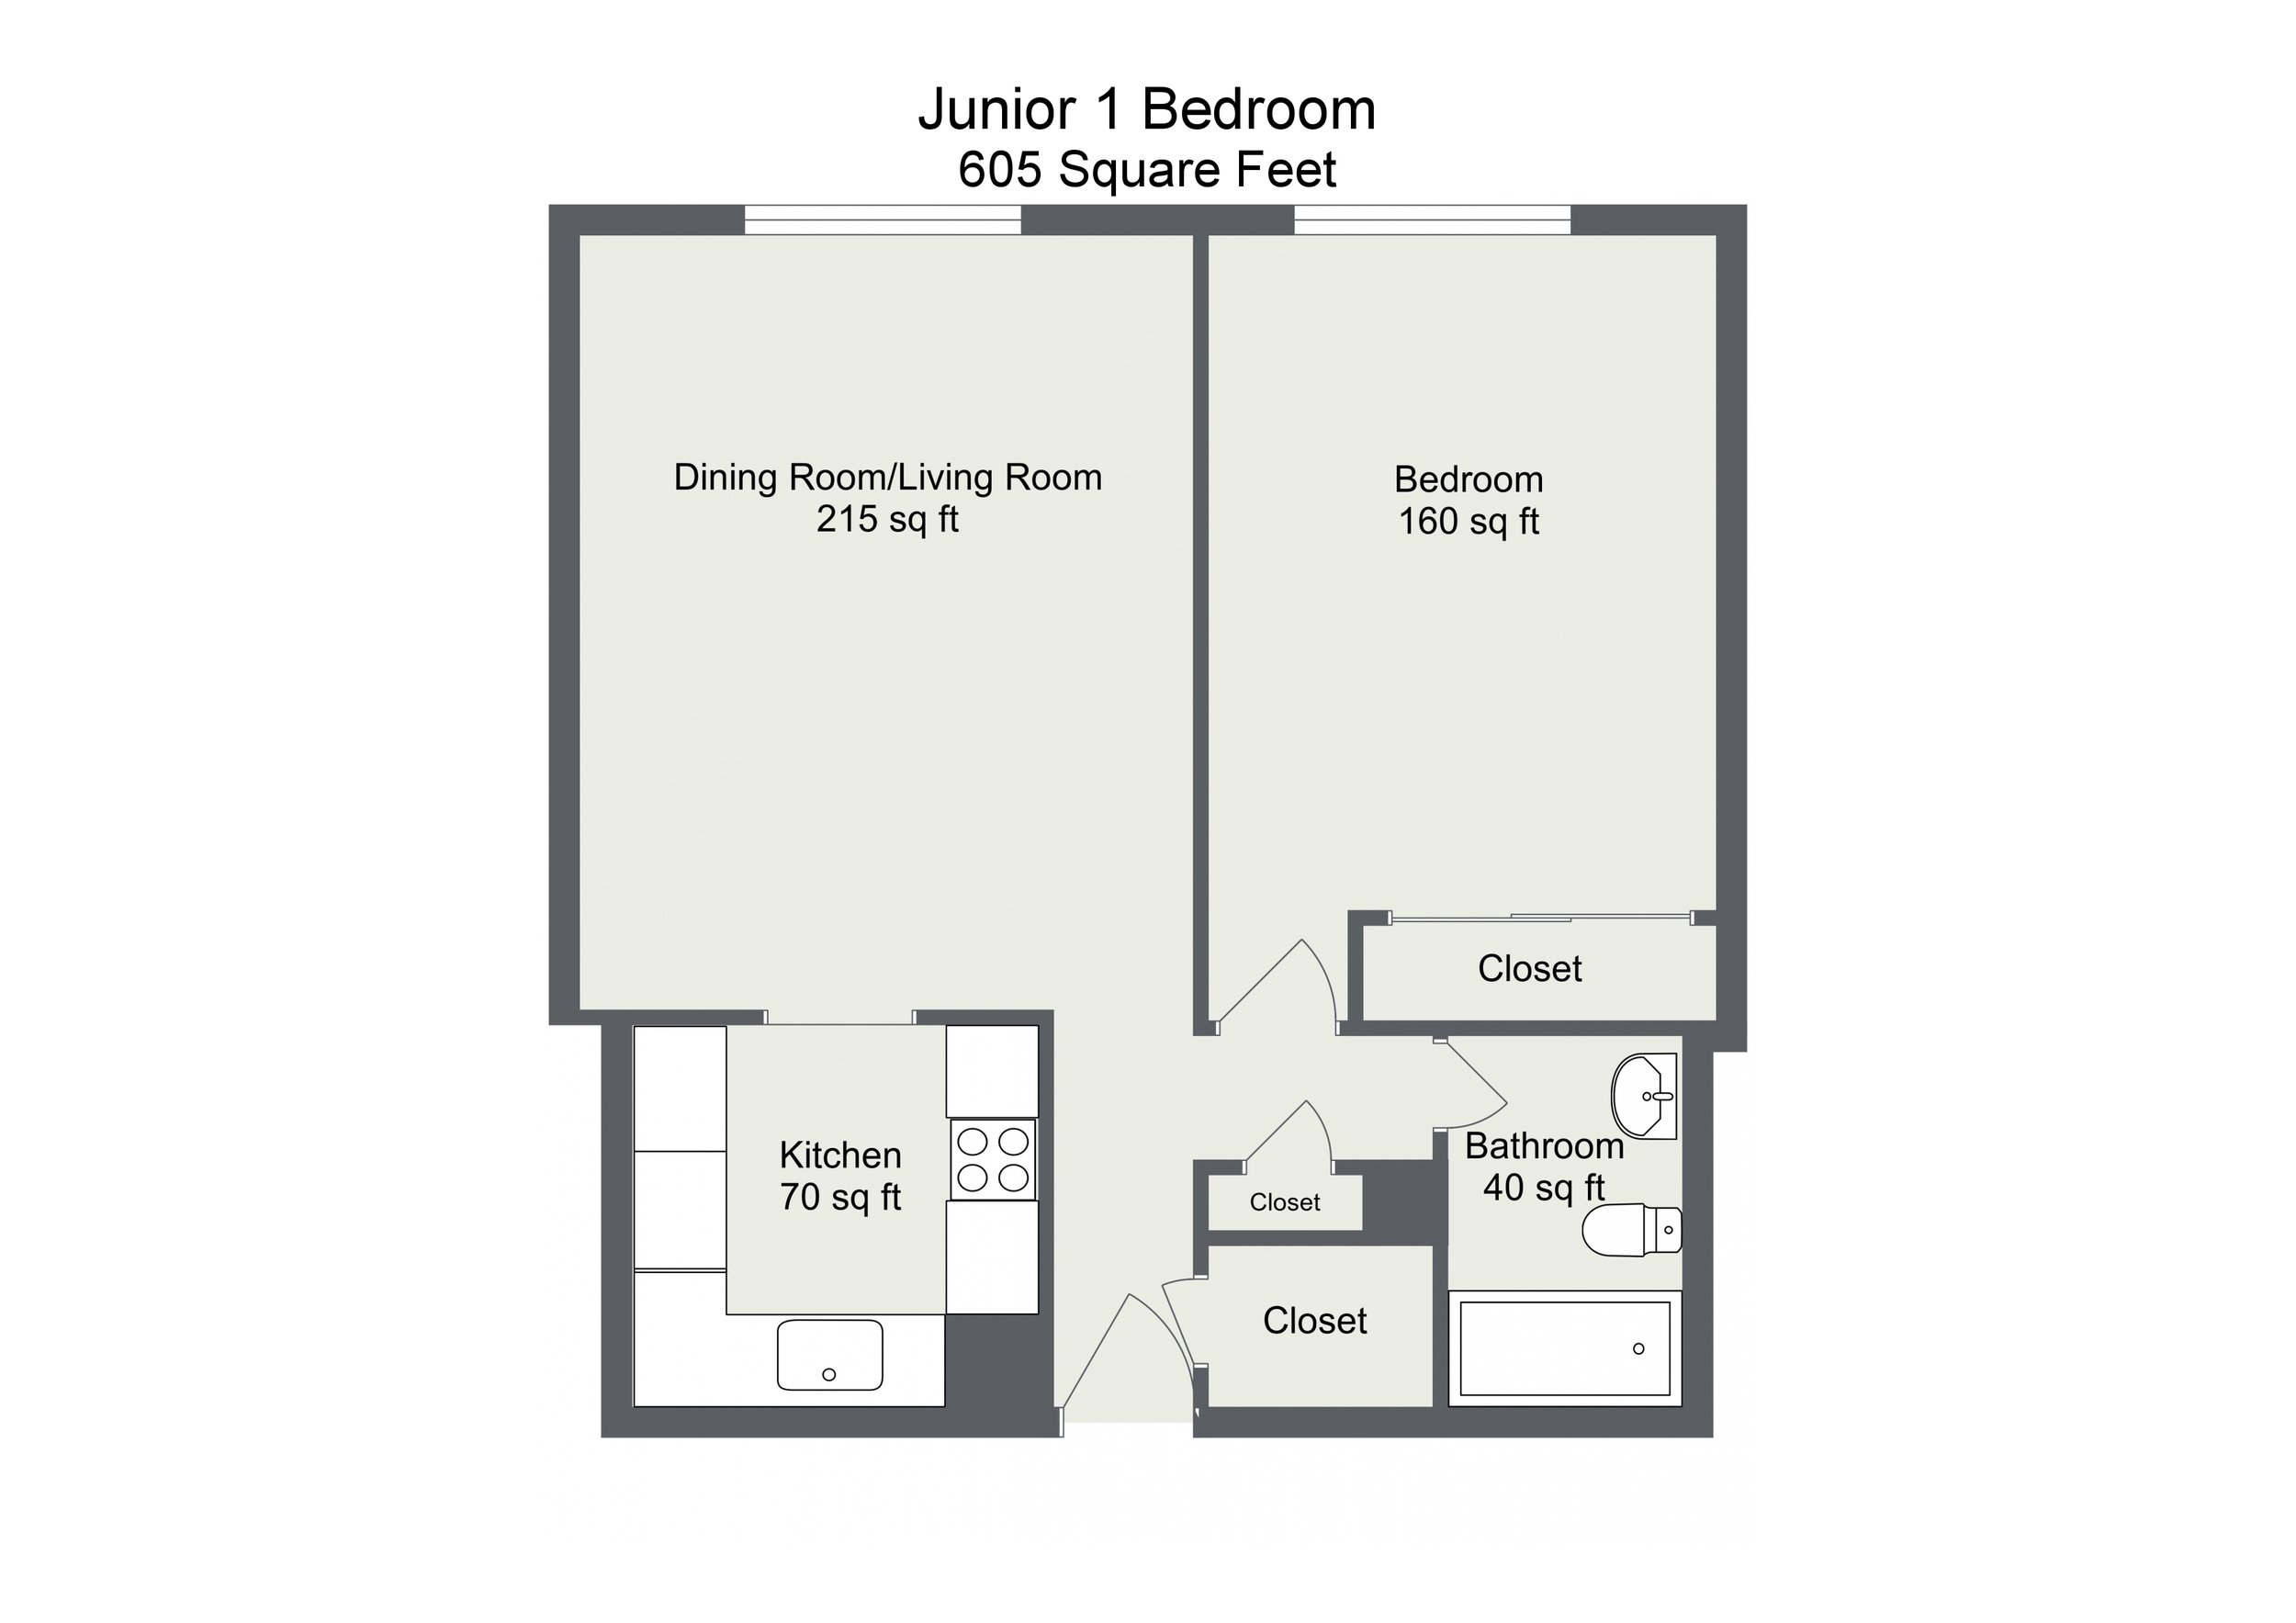 Junior 1 Bedroom 05, 10, 16.jpg